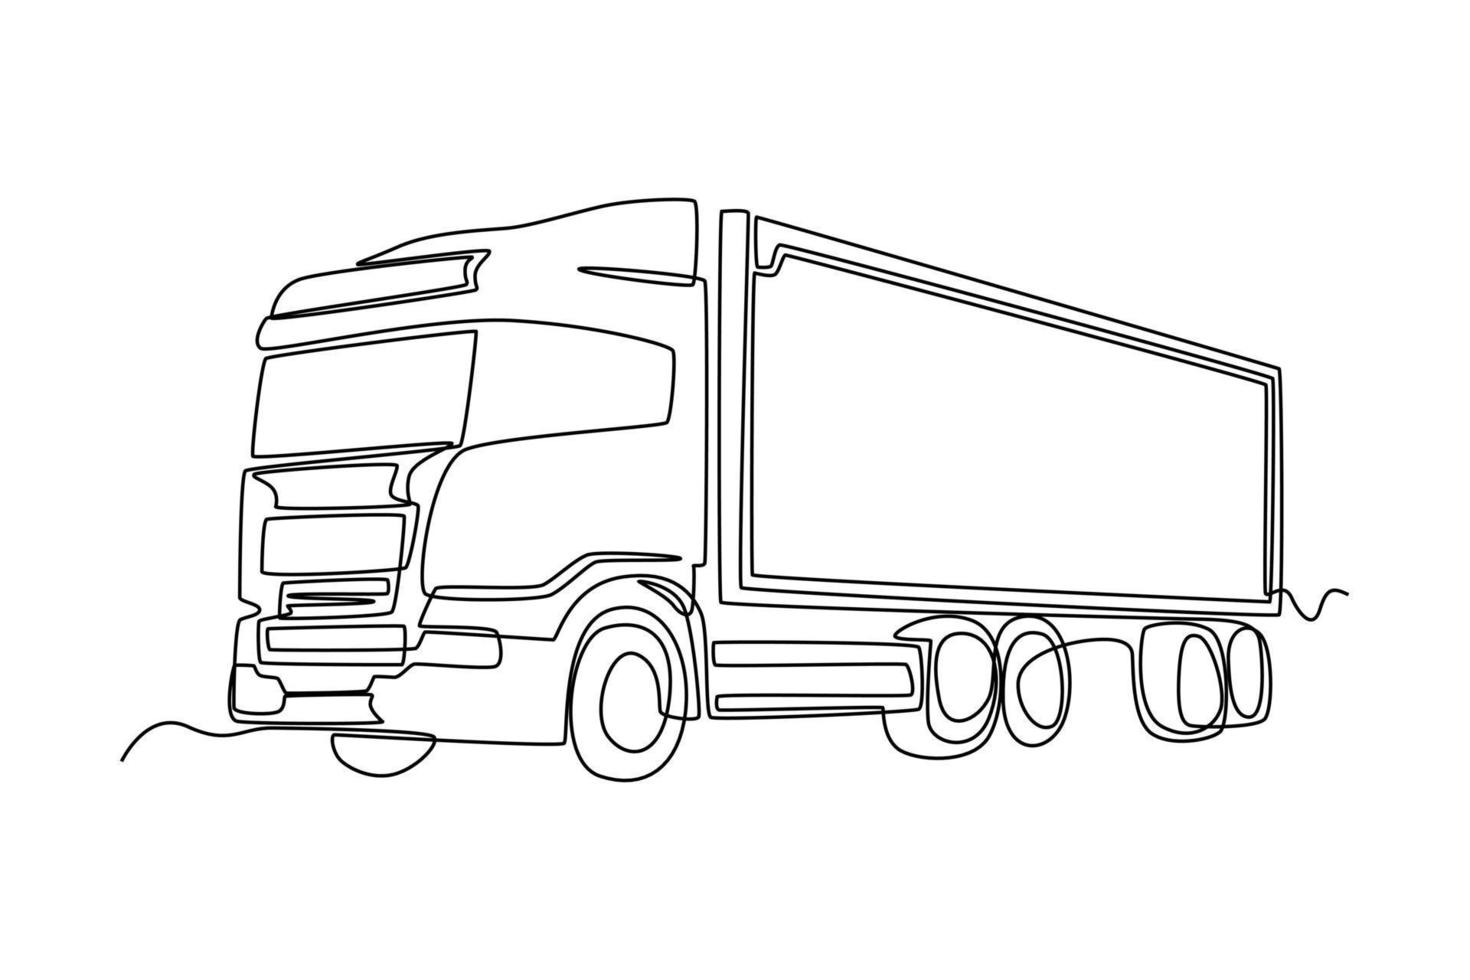 transporte contínuo de caminhões de carga de desenho de uma linha com contêineres. conceito de carga. única linha desenhar design gráfico ilustração vetorial. vetor